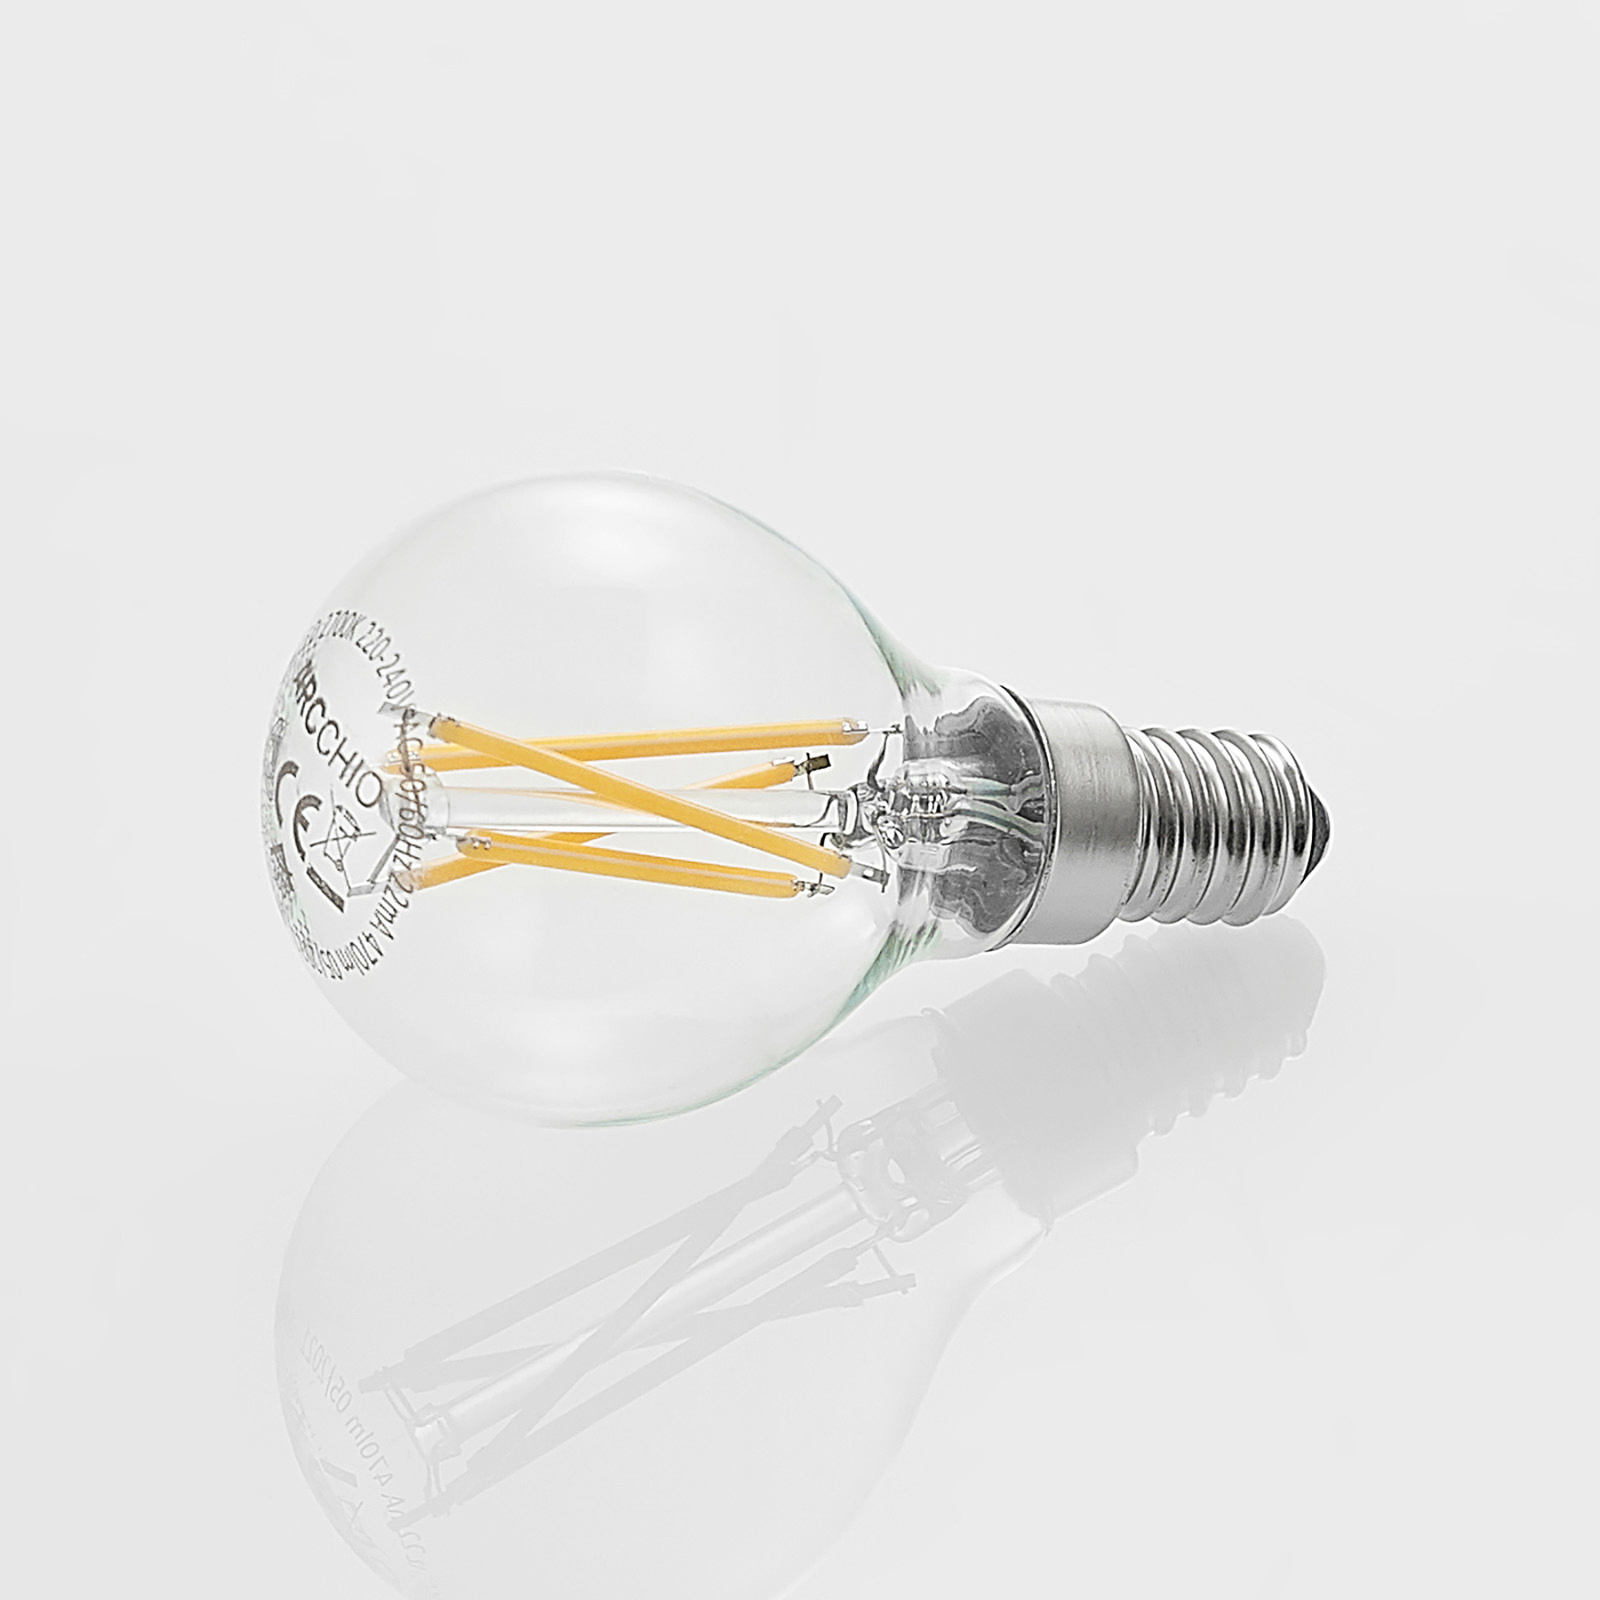 LED žárovka filament E14 4W 2700K kapka dim 2ks